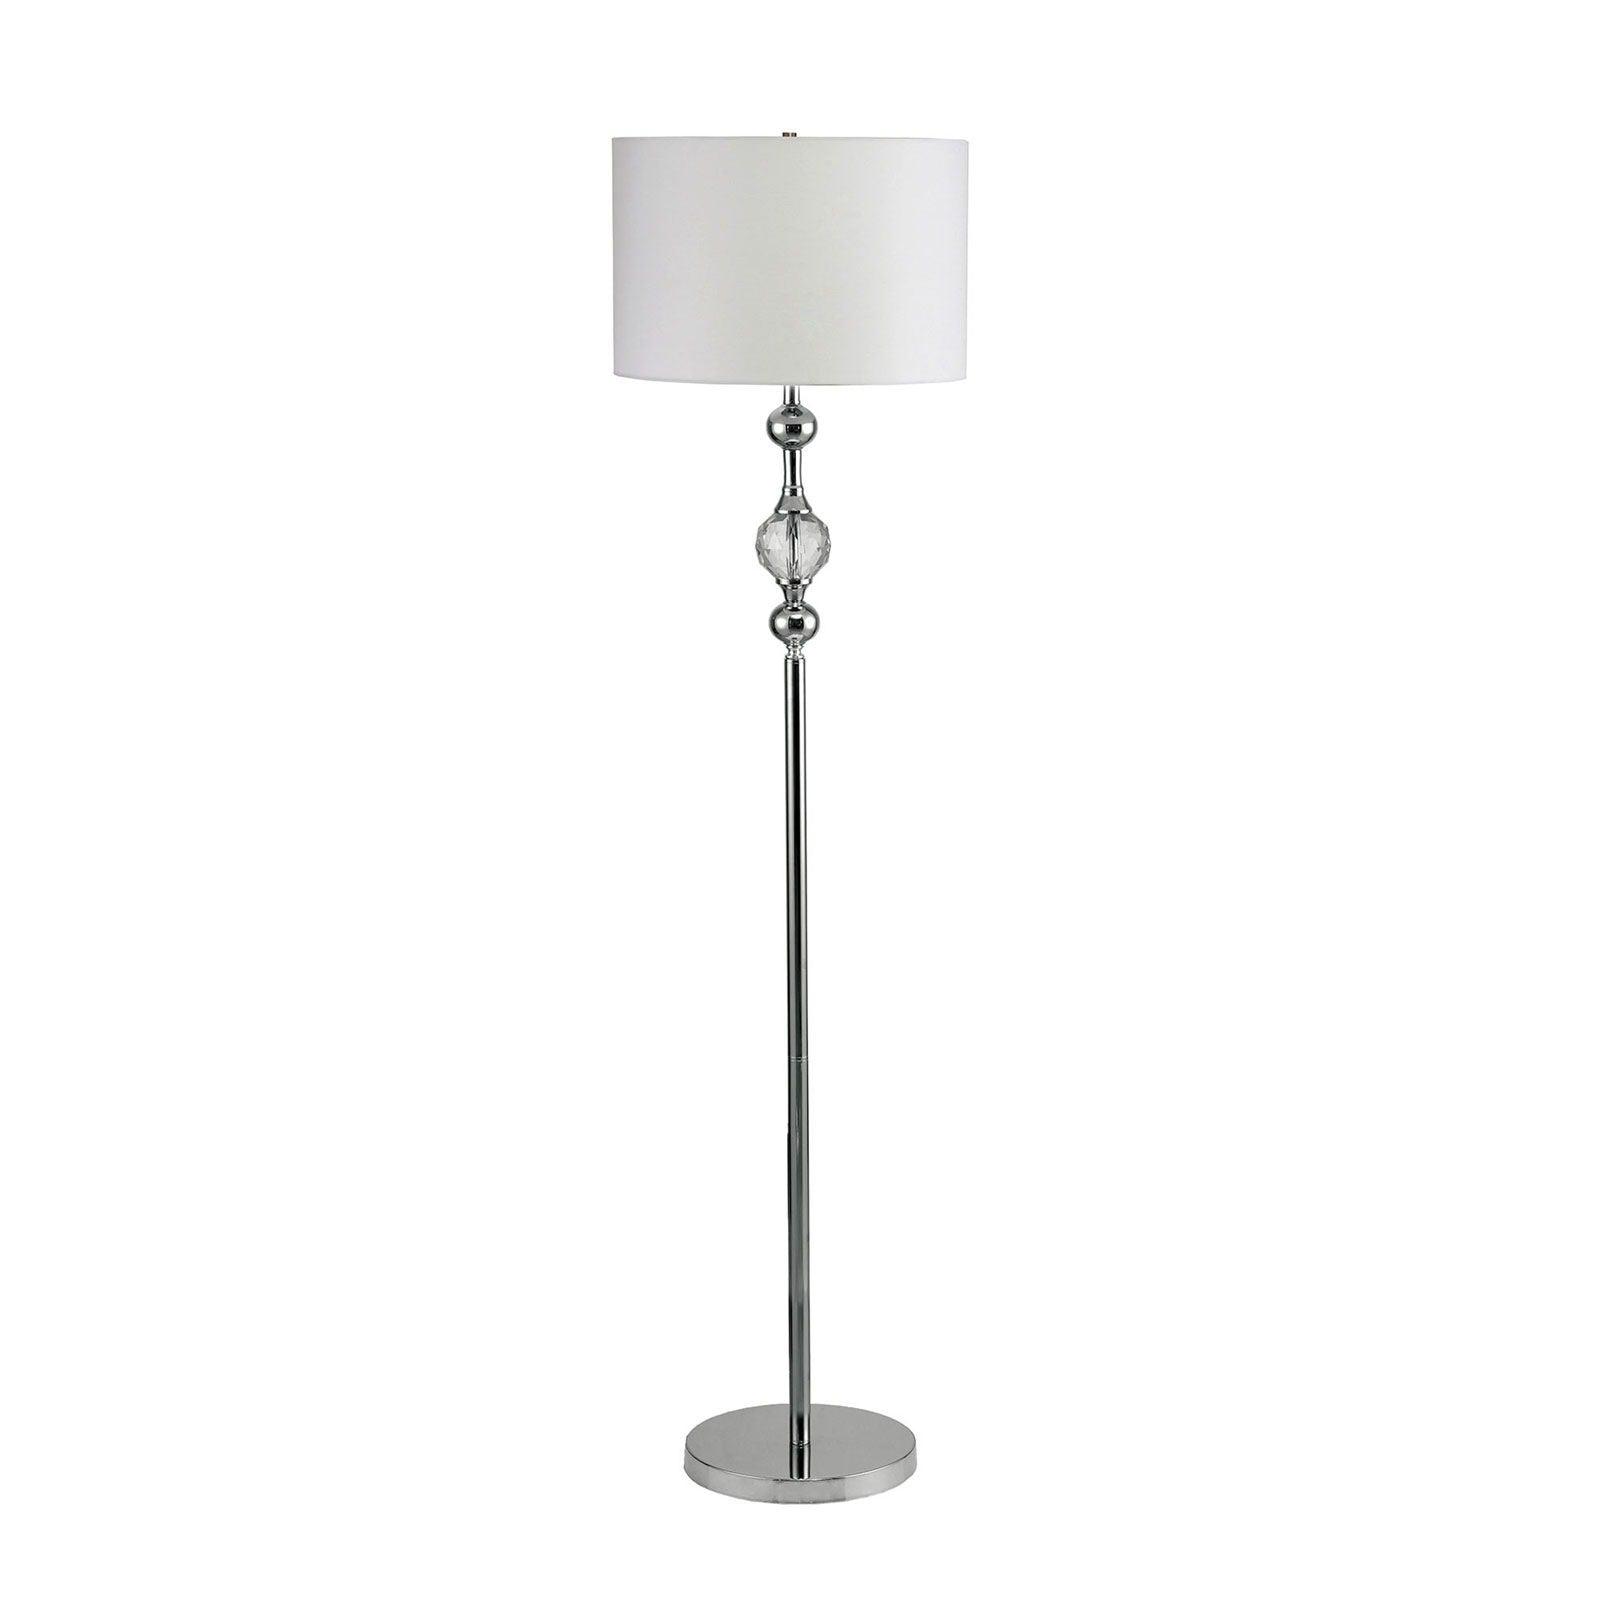 Furniture of America - Emi - Floor Lamp - White / Silver - 5th Avenue Furniture